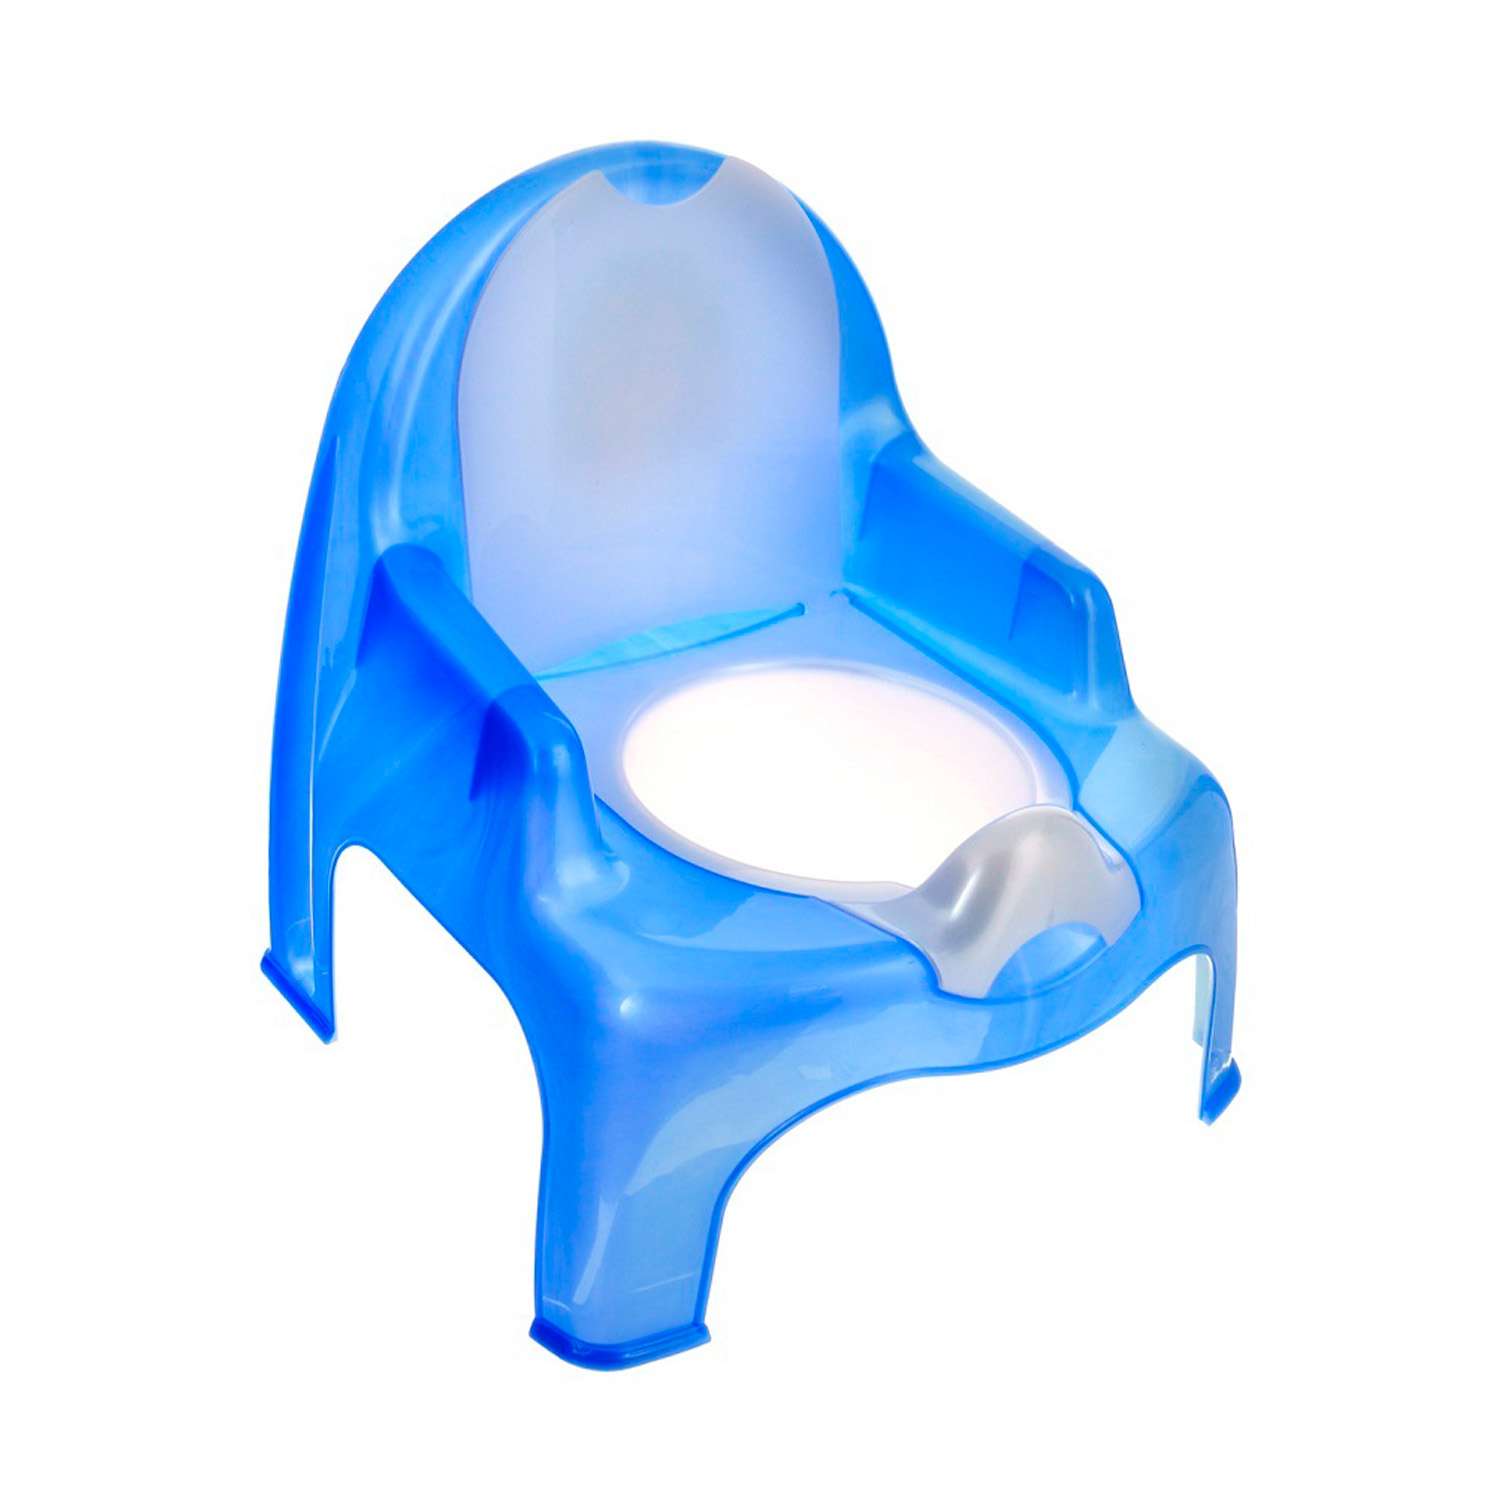 Горшок детский elfplast стульчик синий перламутровый - фото 1